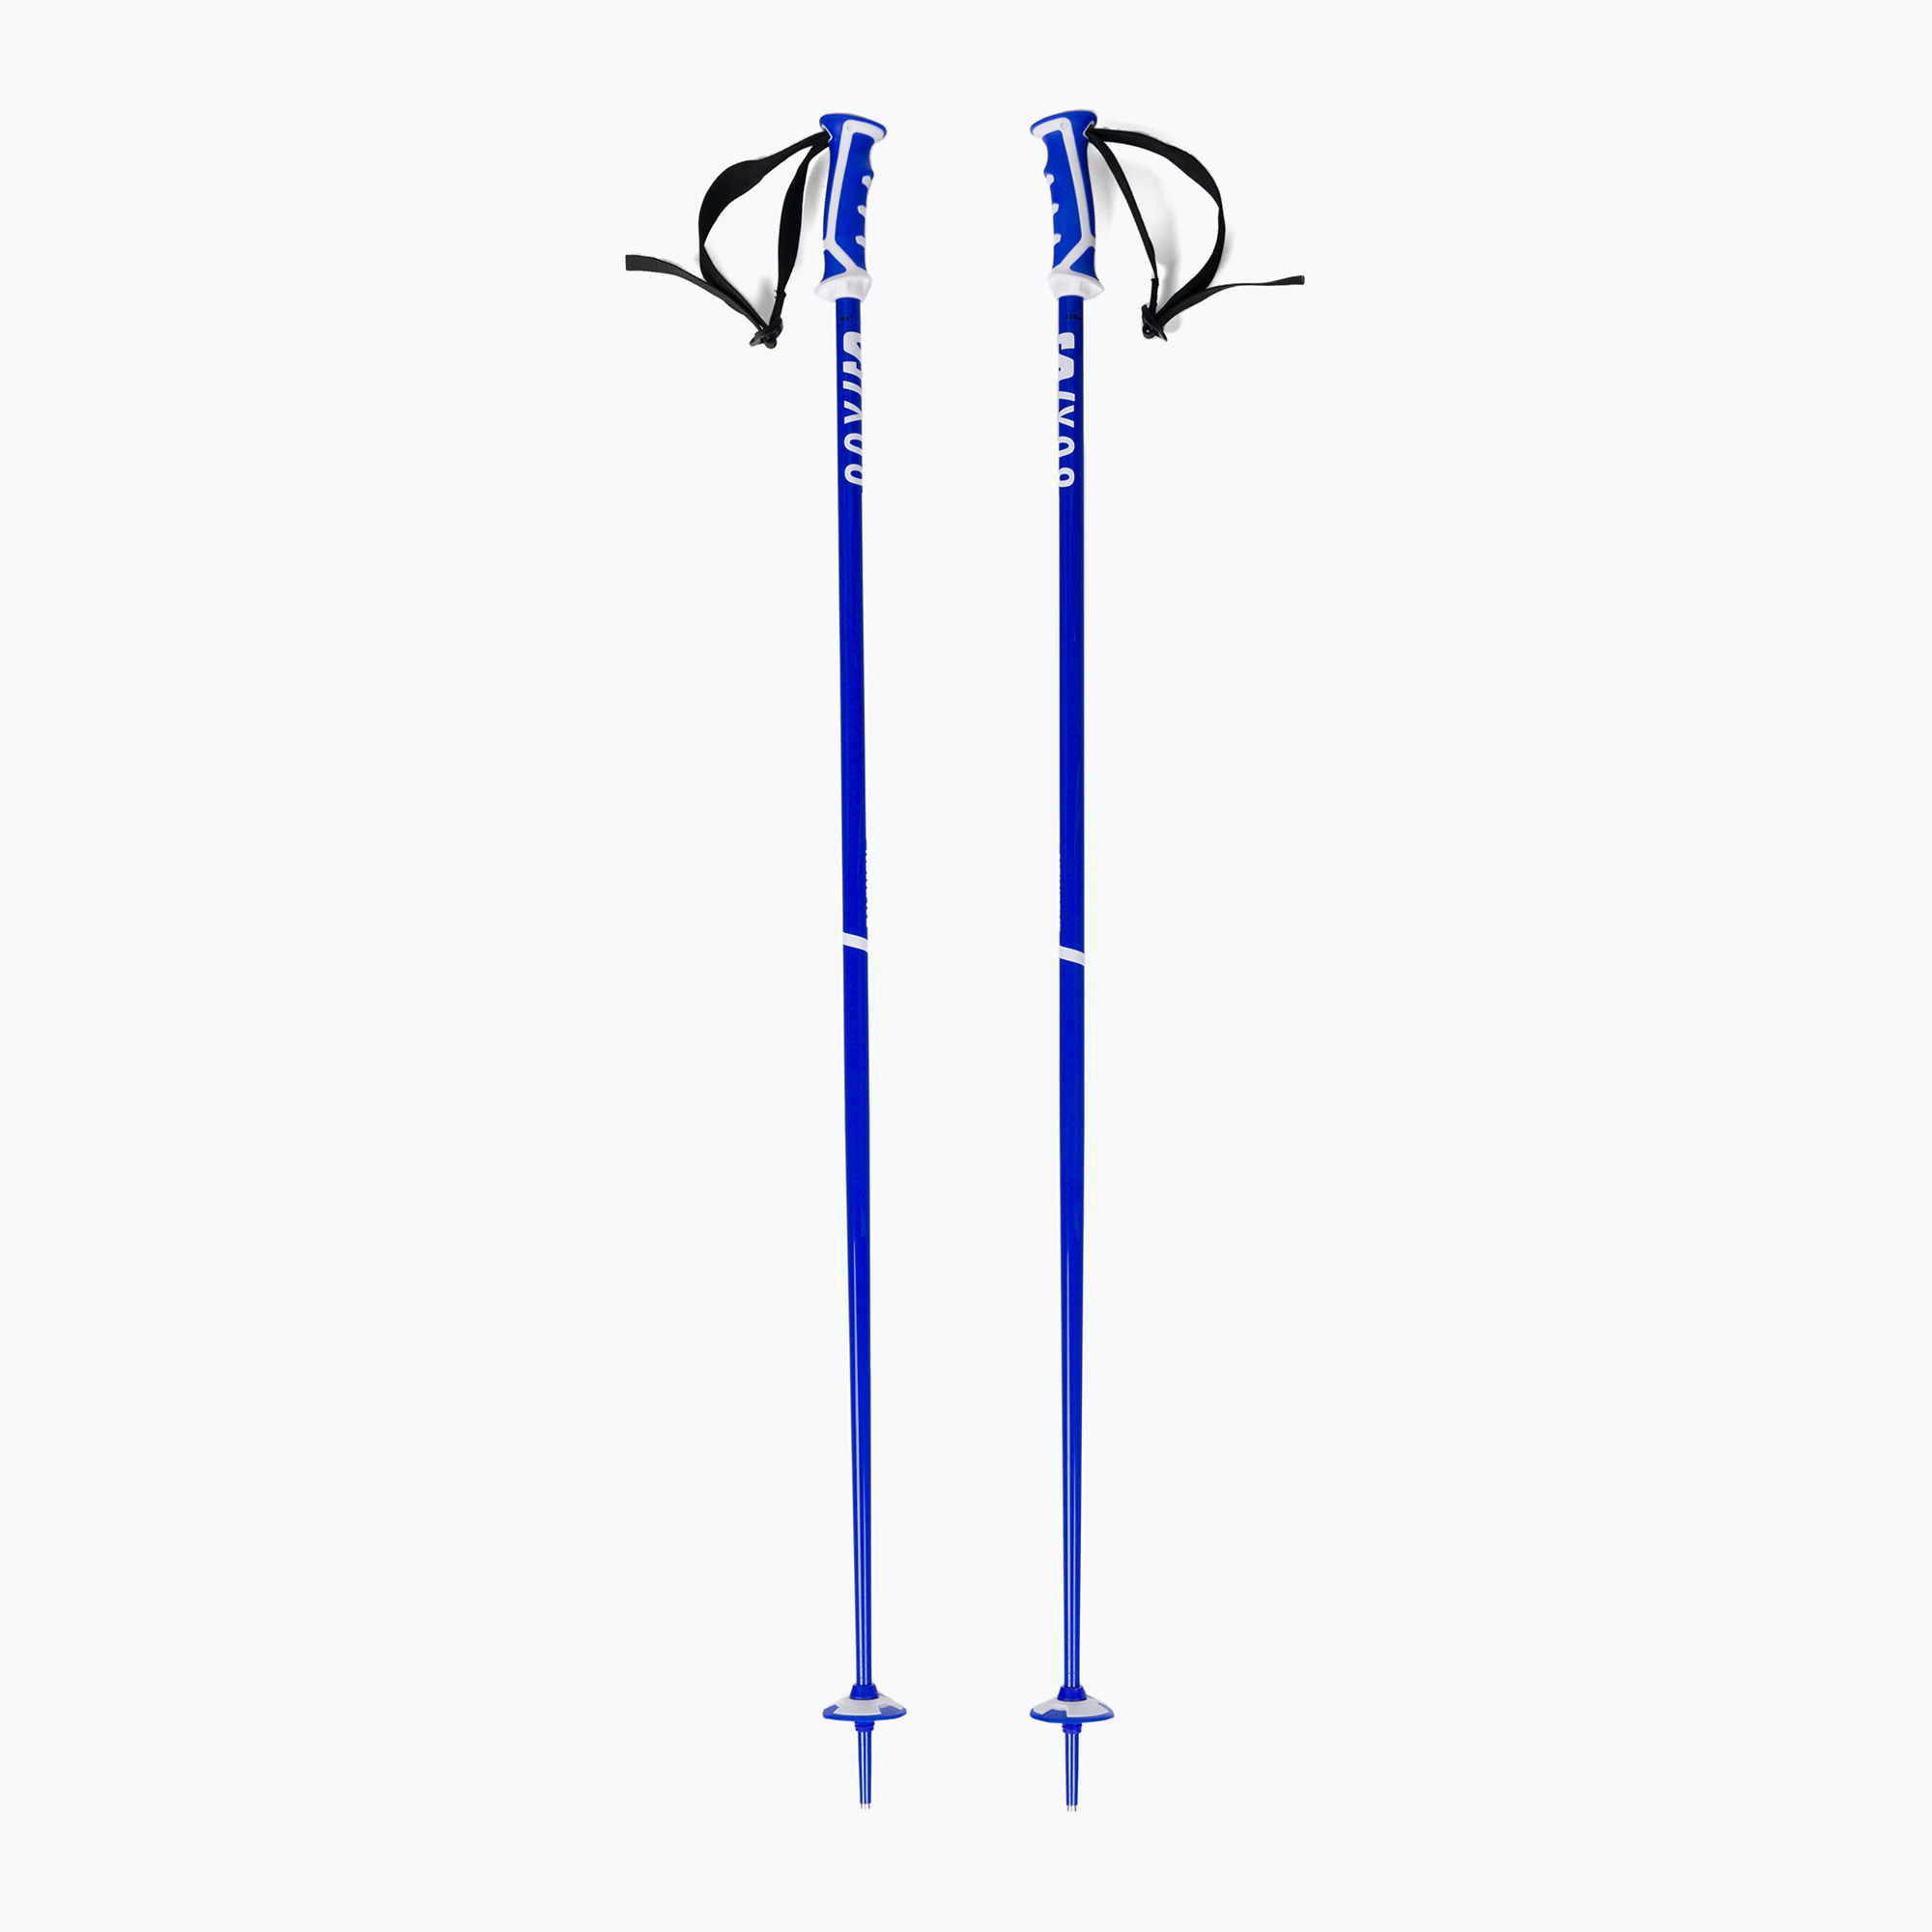 Bețe de schi Salomon X 08 albastre L47022400